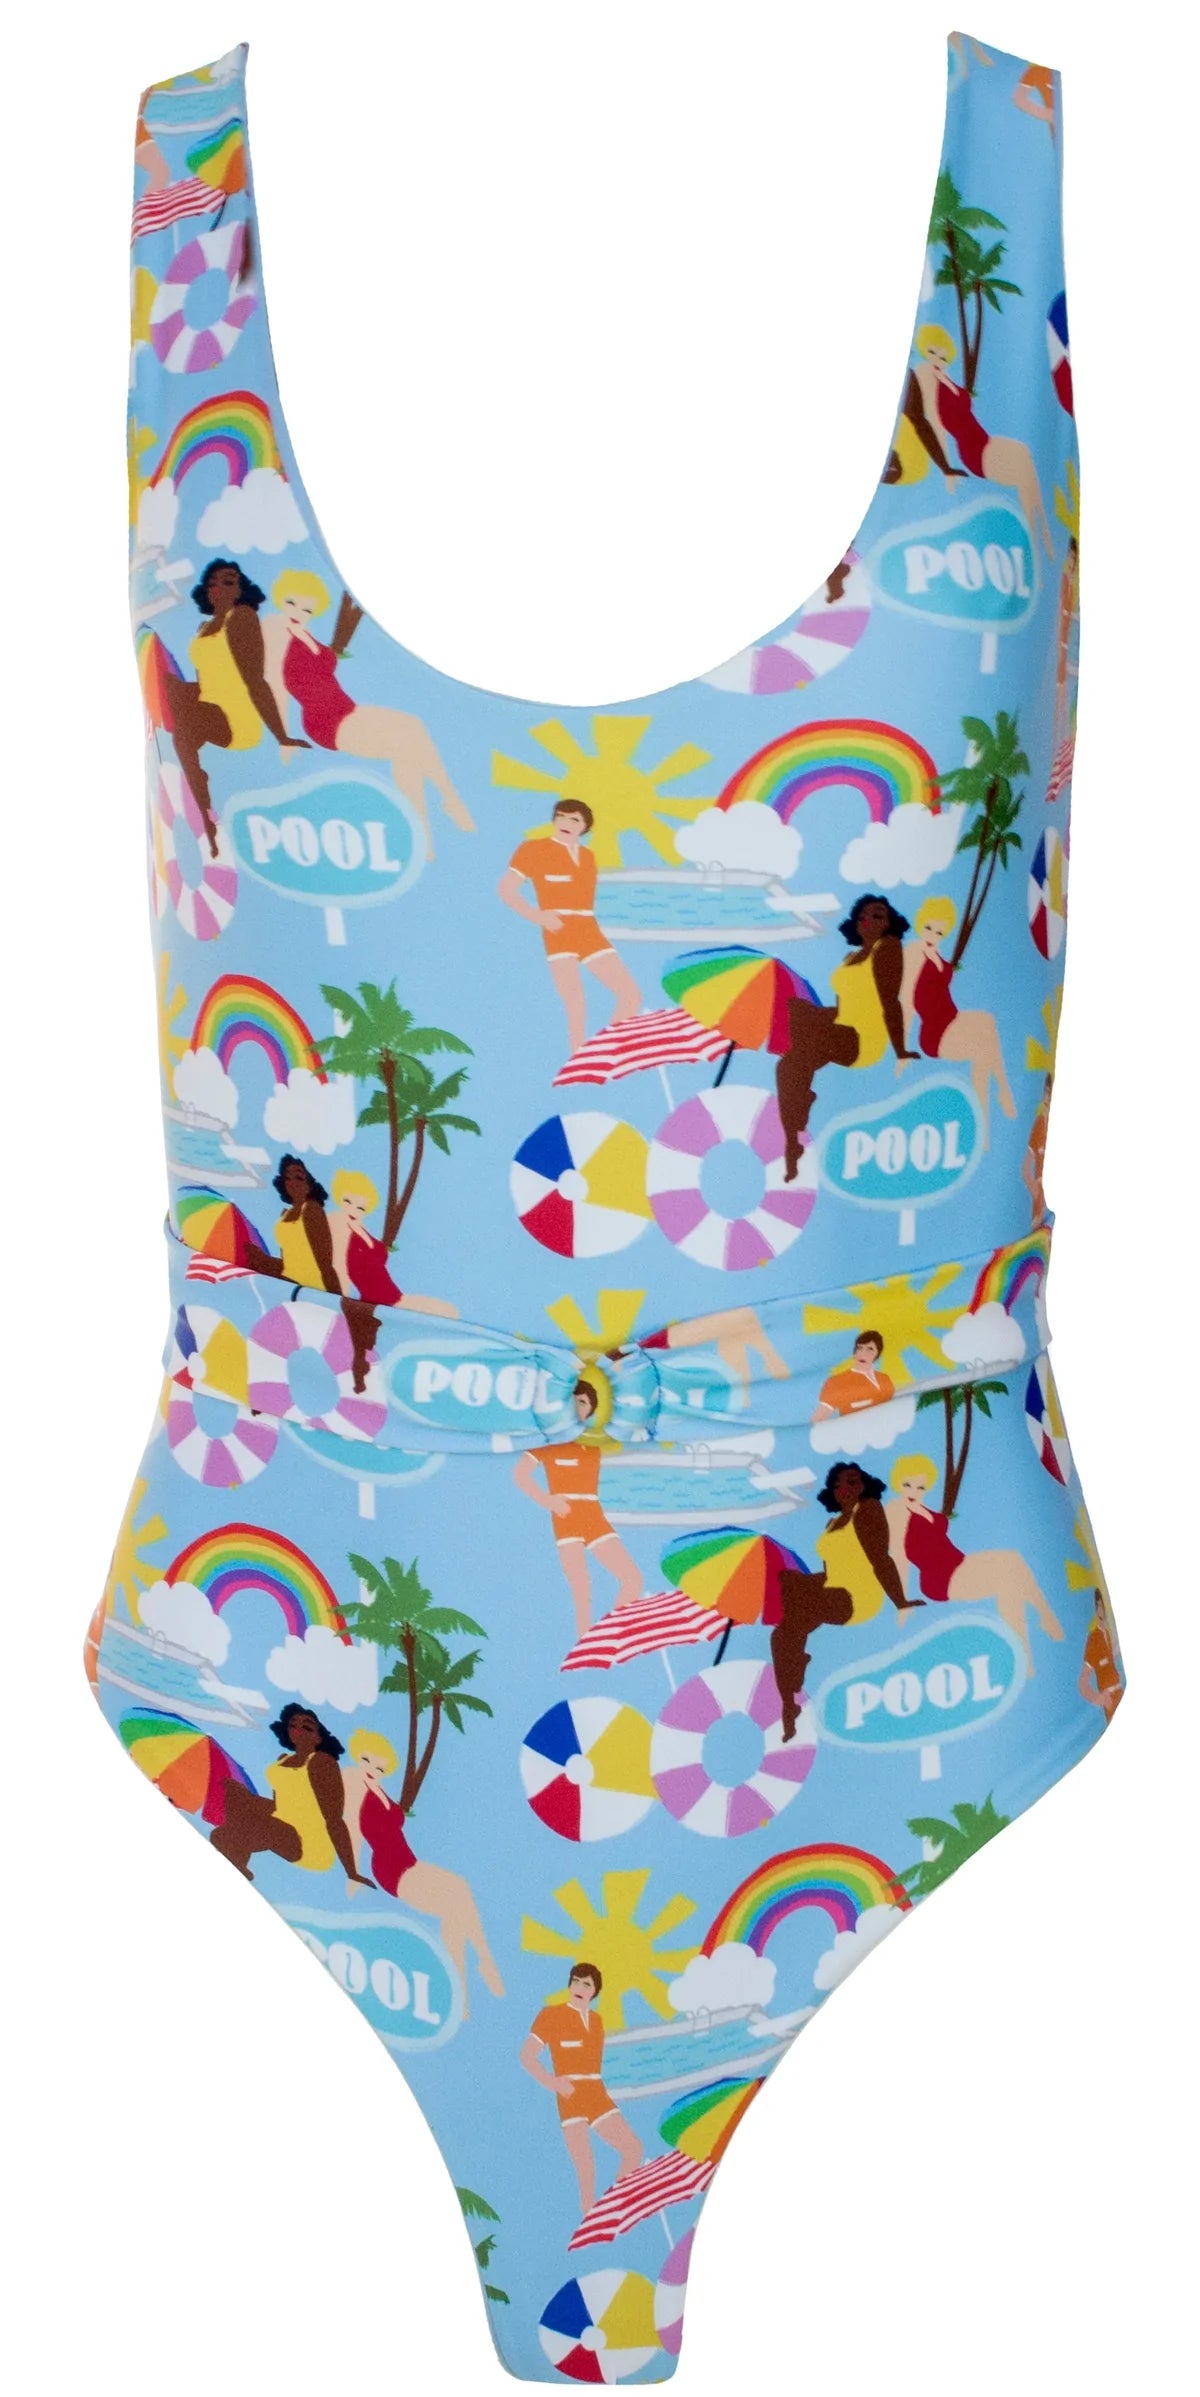 Poolside printed one piece swimsuit - Ms.Meri Mak